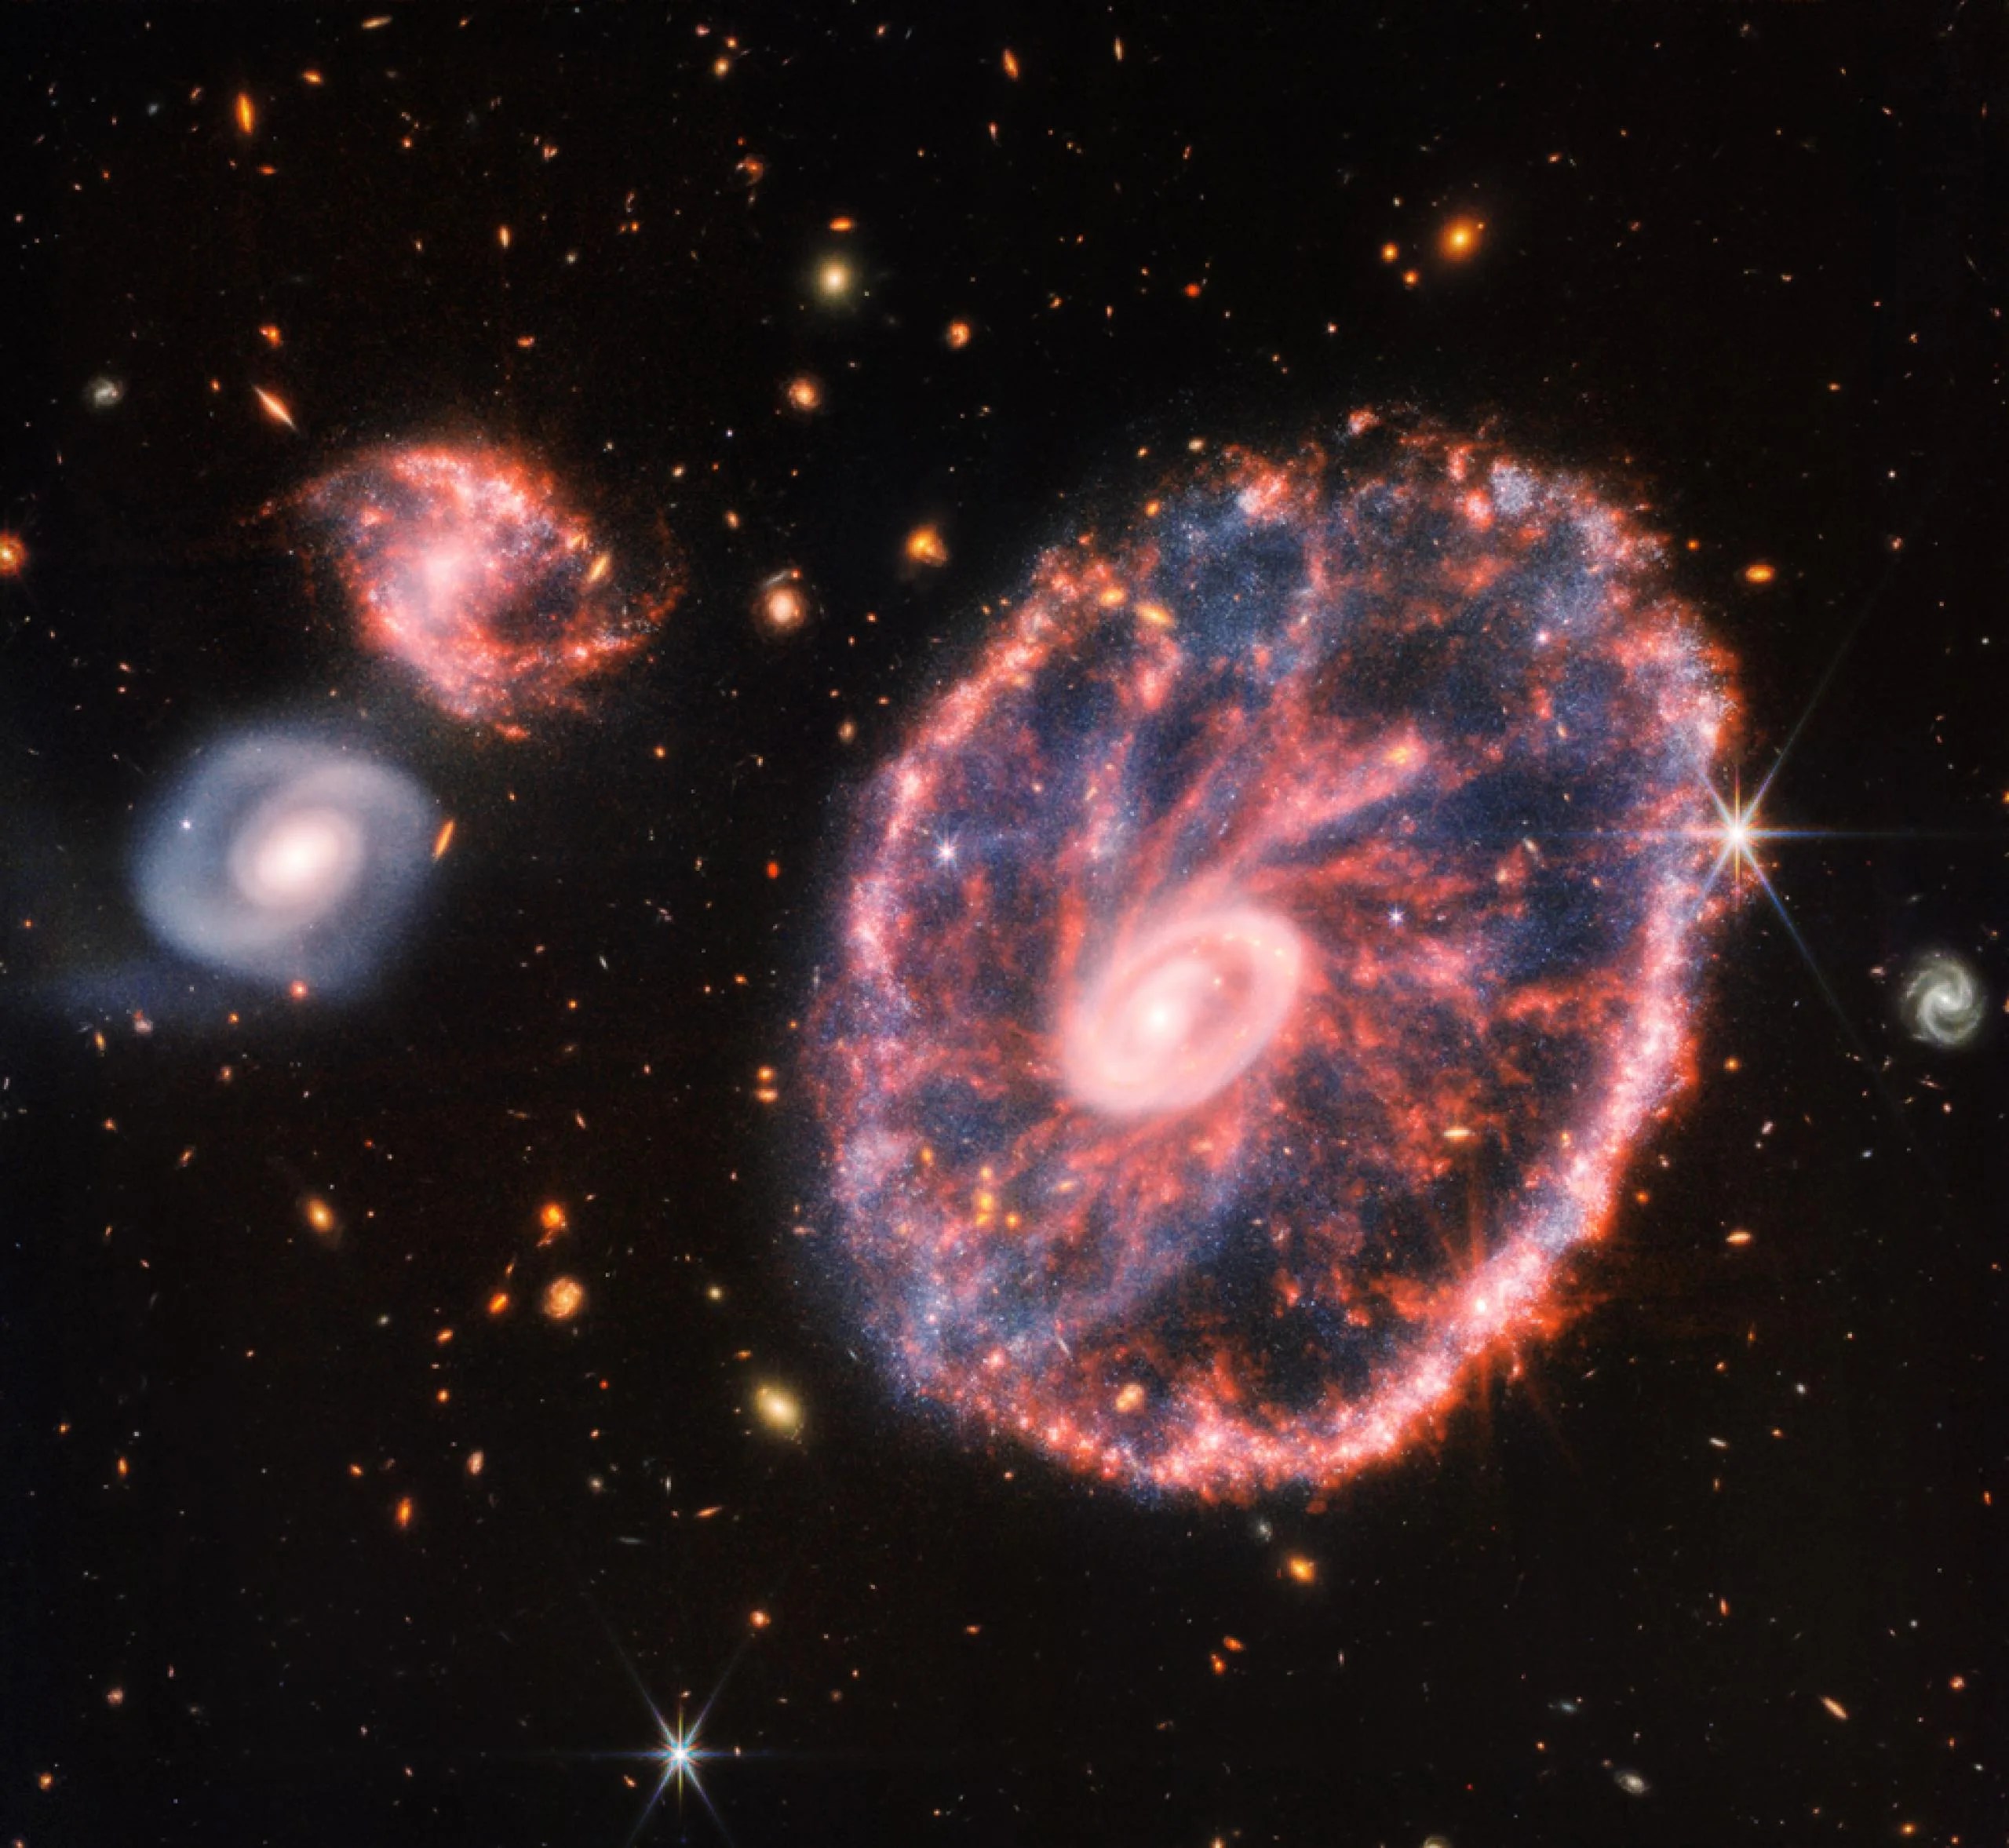 Una gran galaxia a la derecha, con dos galaxias compañeras mucho más pequeñas a la izquierda, a las 10 y a las 9 horas. La gran galaxia parece una rueda moteada, con un anillo exterior ovalado y un pequeño anillo interior que no está en el centro. El anillo exterior contiene penachos rosados como los radios de la rueda, con regiones azules polvorientas entre ellos. Las zonas rosas son polvo de silicatos, mientras que las azules son focos de estrellas jóvenes y polvo de hidrocarburos. El anillo interior es m